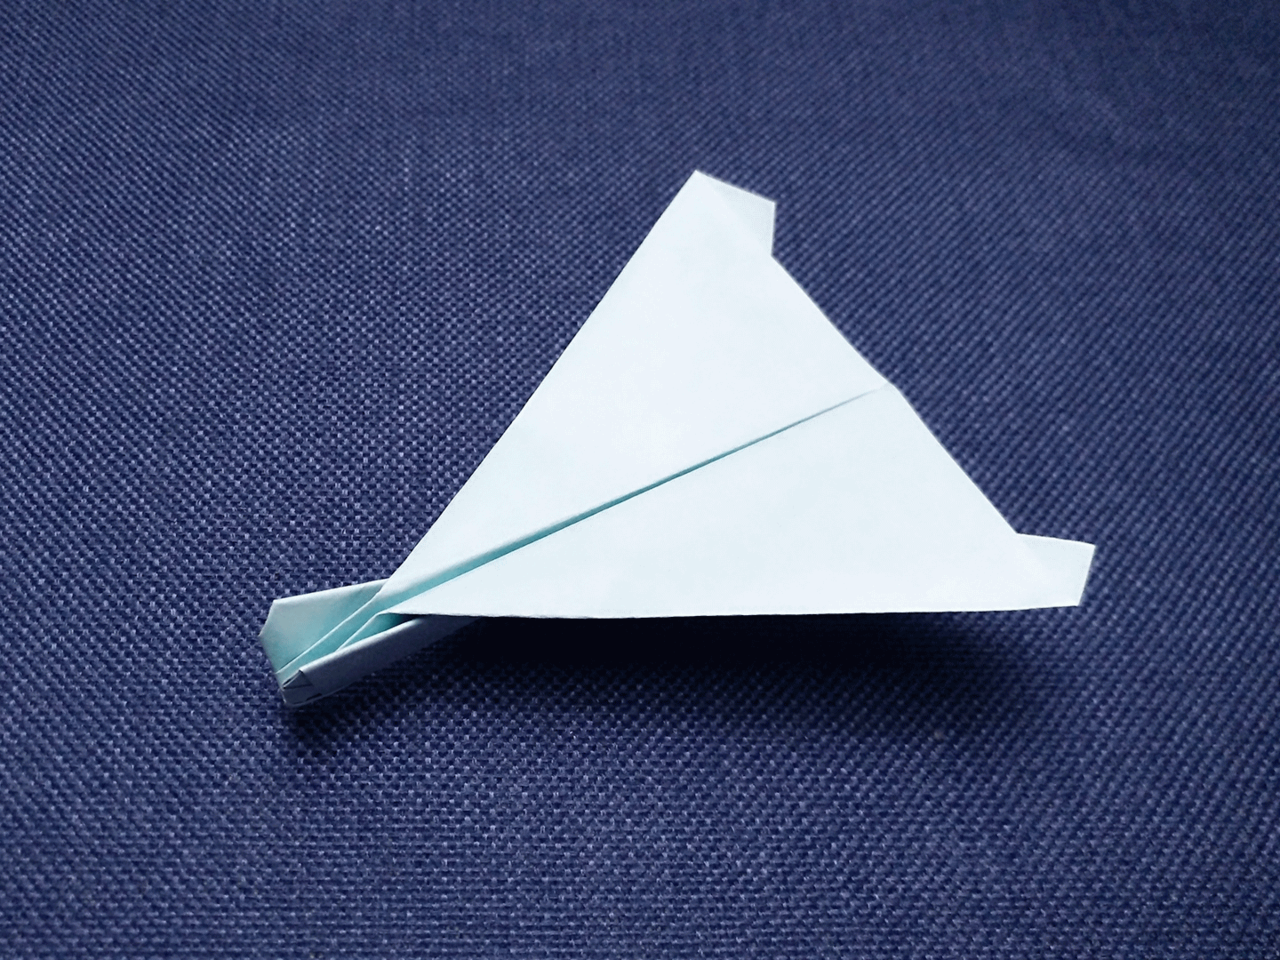 纸飞机怎么折?